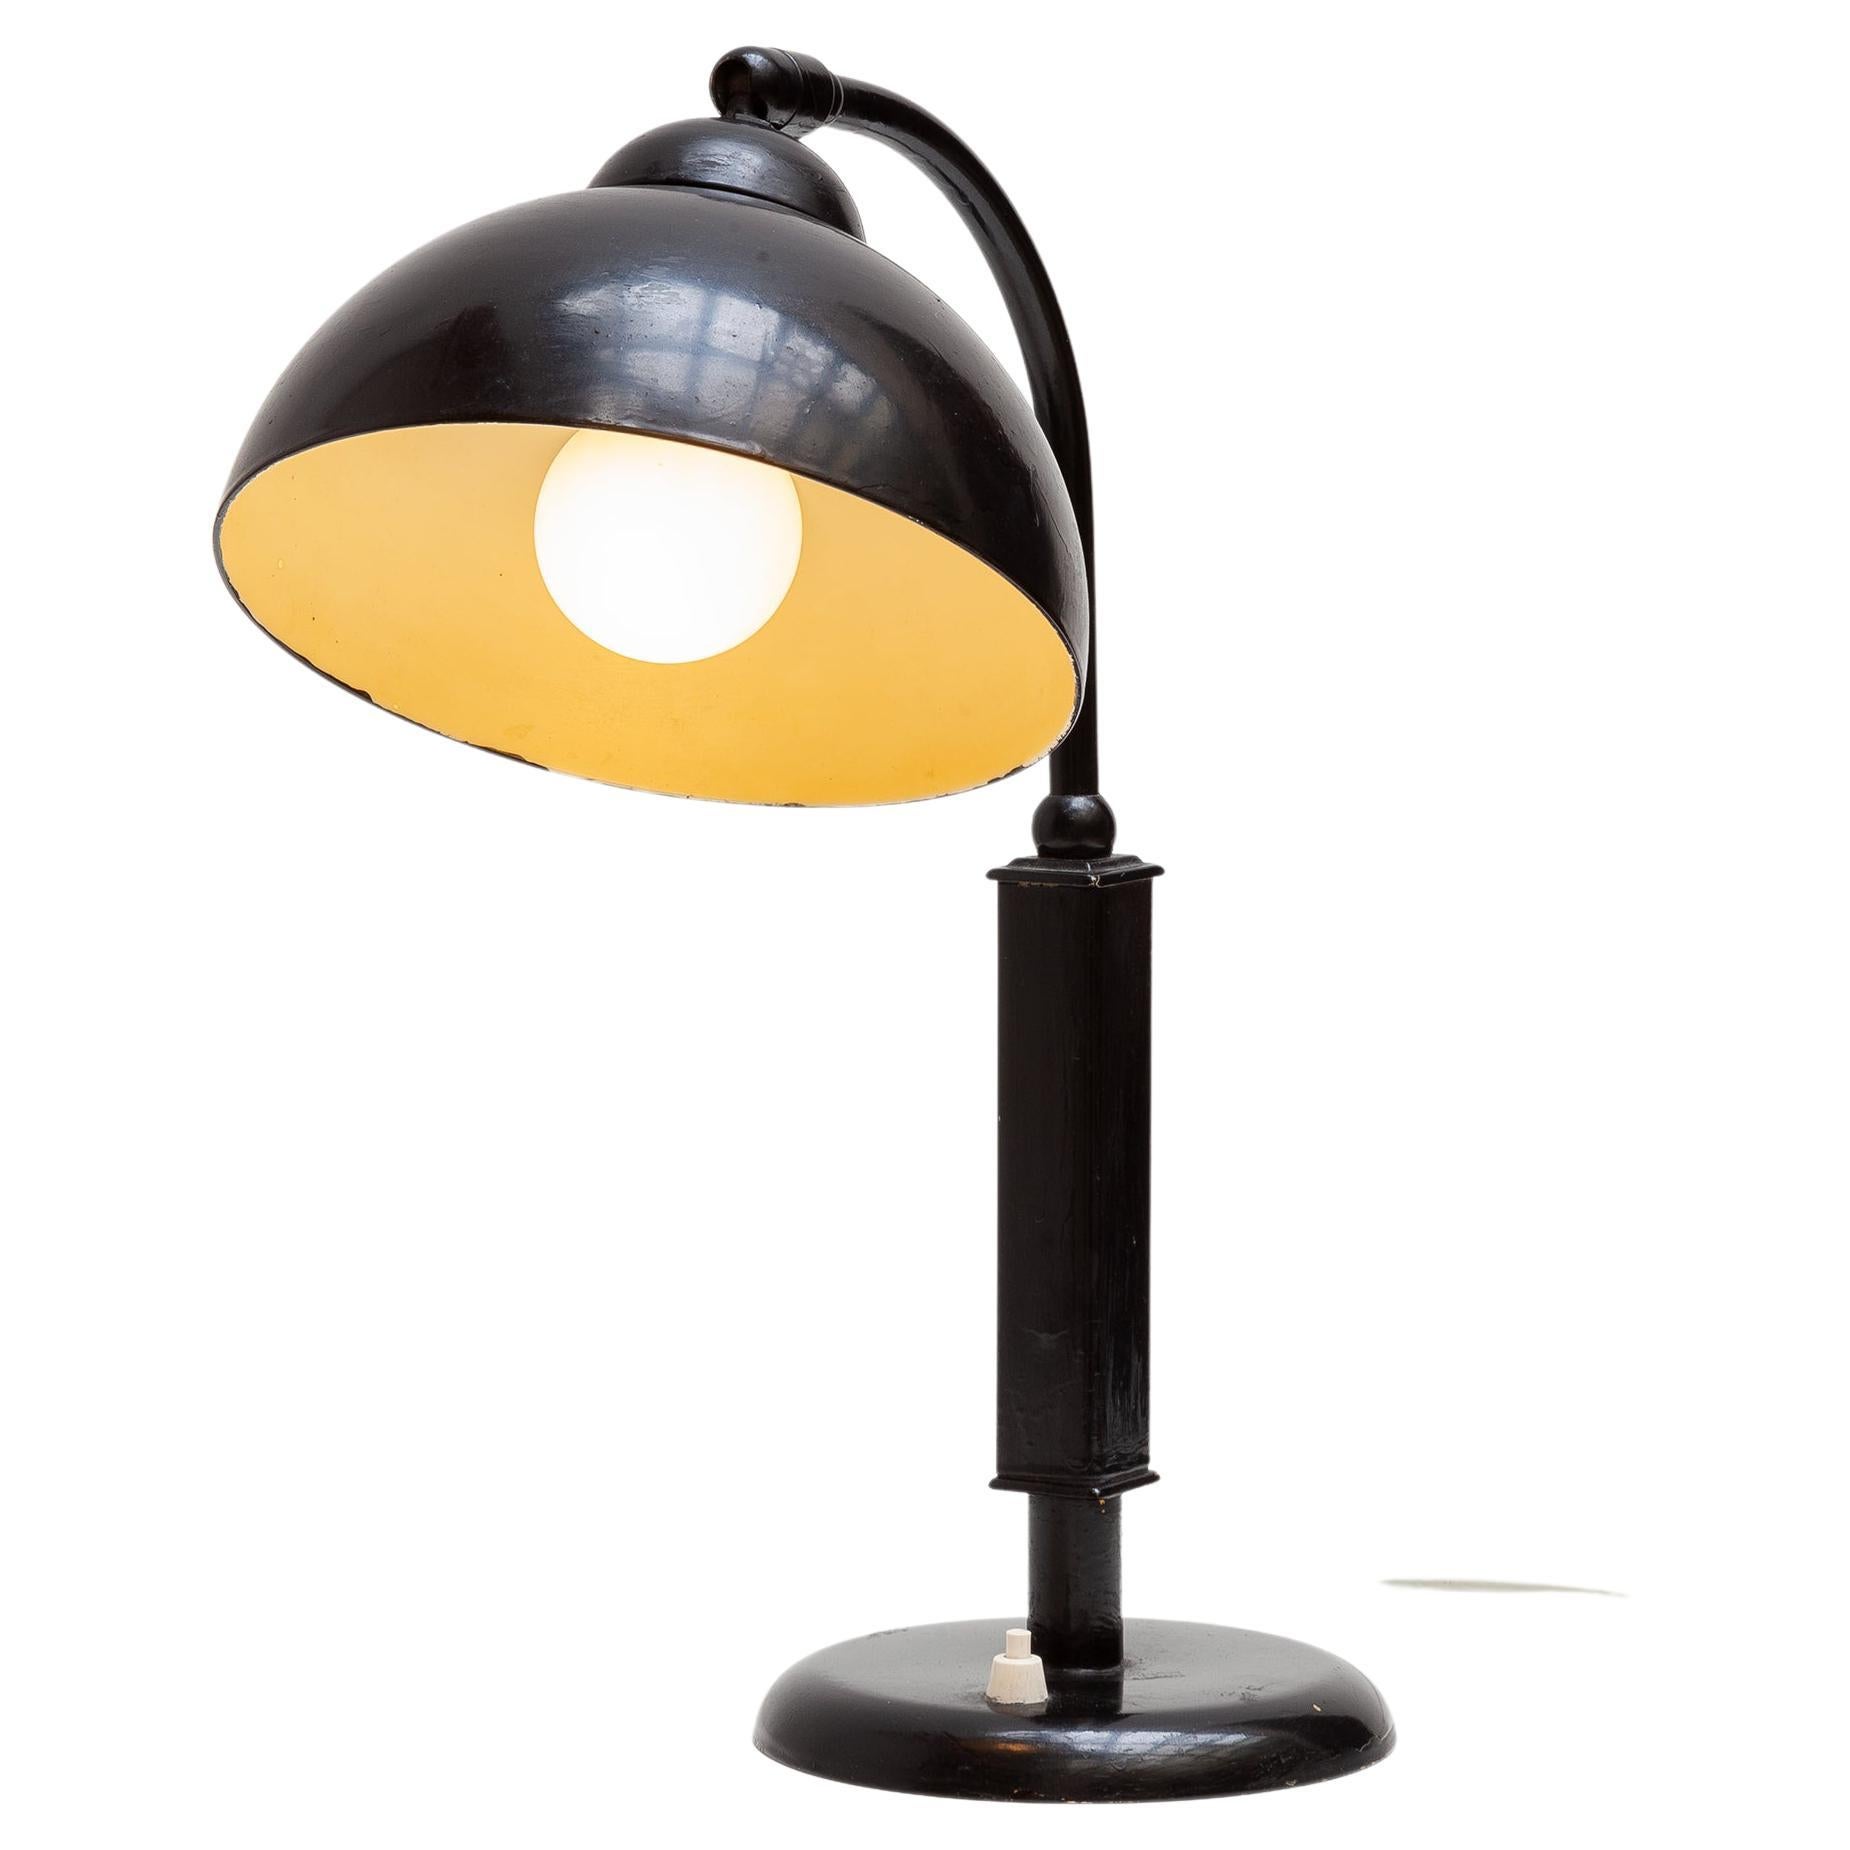 Christian Dell Schreibtischlampe von Kaiser 1930er Design, Deutschland. Bauhaus-Schreibtischlampe aus schwarz emailliertem Metall und Bakelit-Schirm. Verstellbarer Schwanenhals. Beleuchtet von 1 Glühbirne.